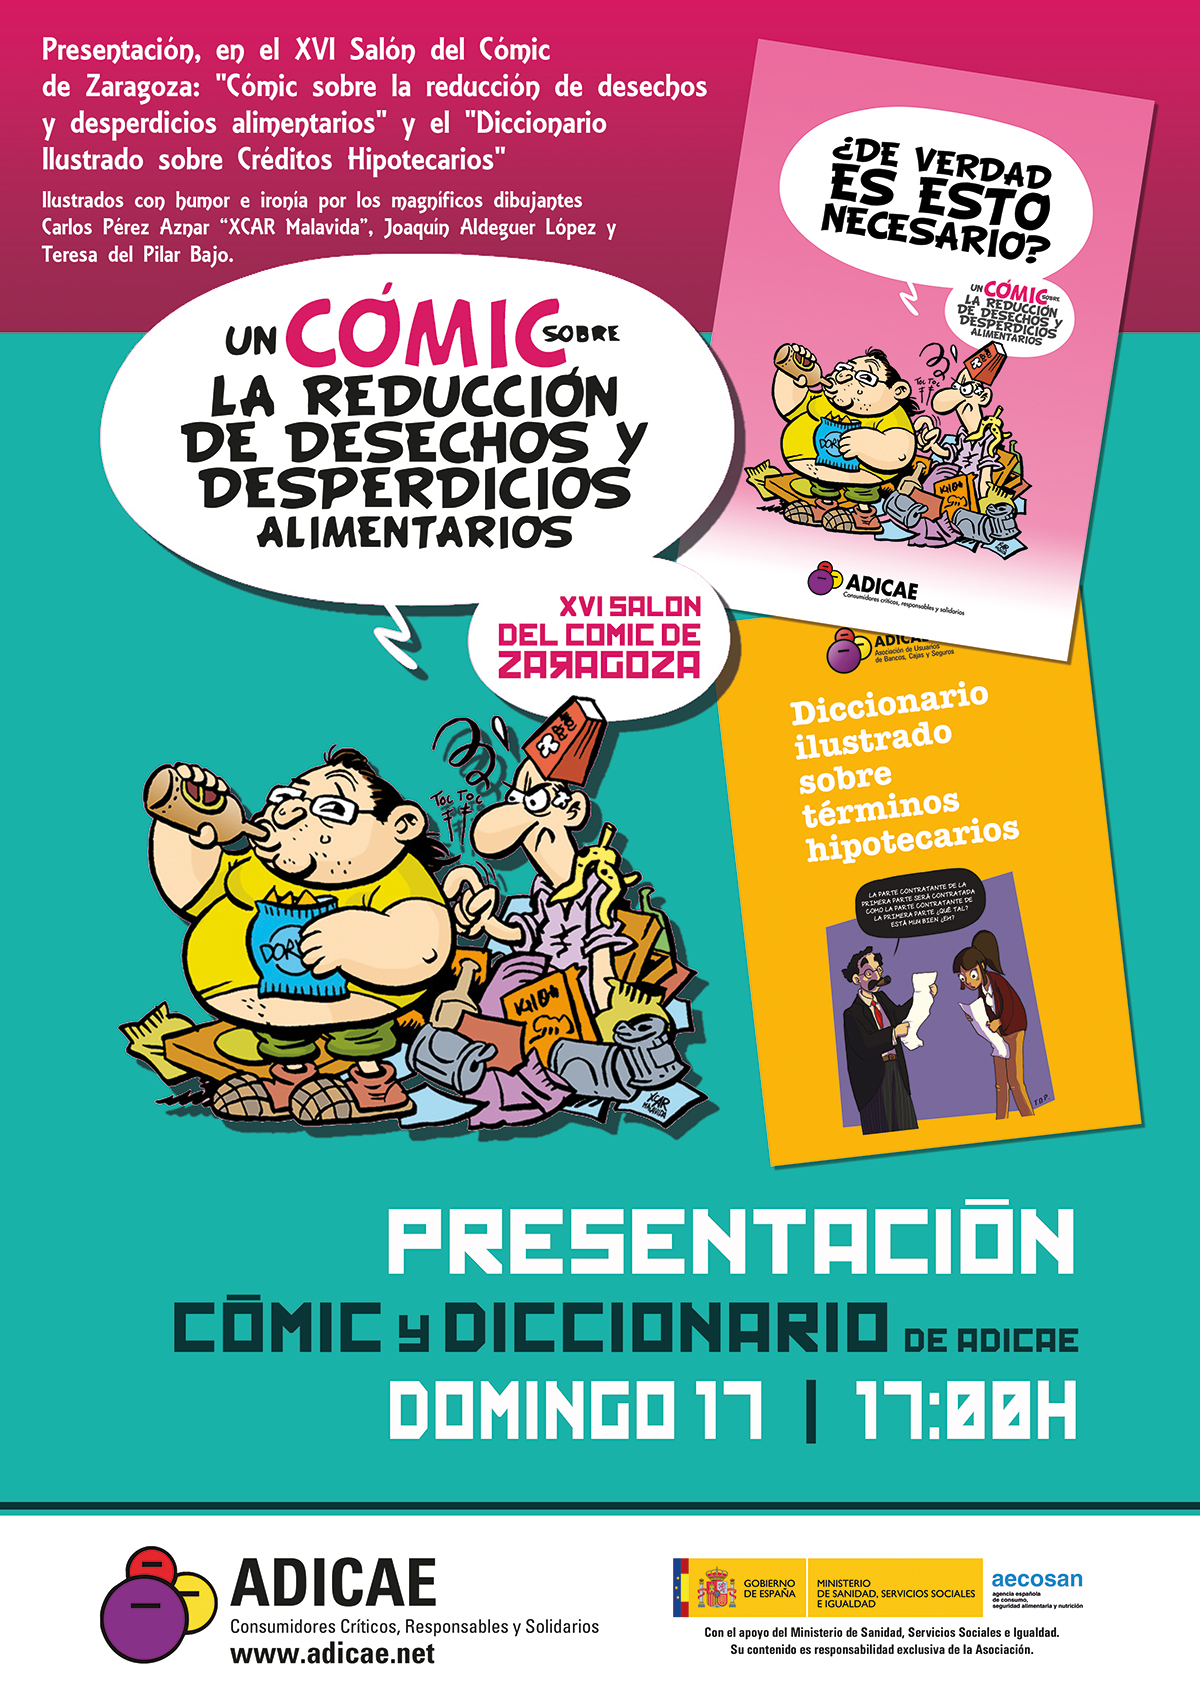 Cómic y diccionario ilustrado: las publicaciones de ADICAE se presentarán en el salón del cómic de Zaragoza